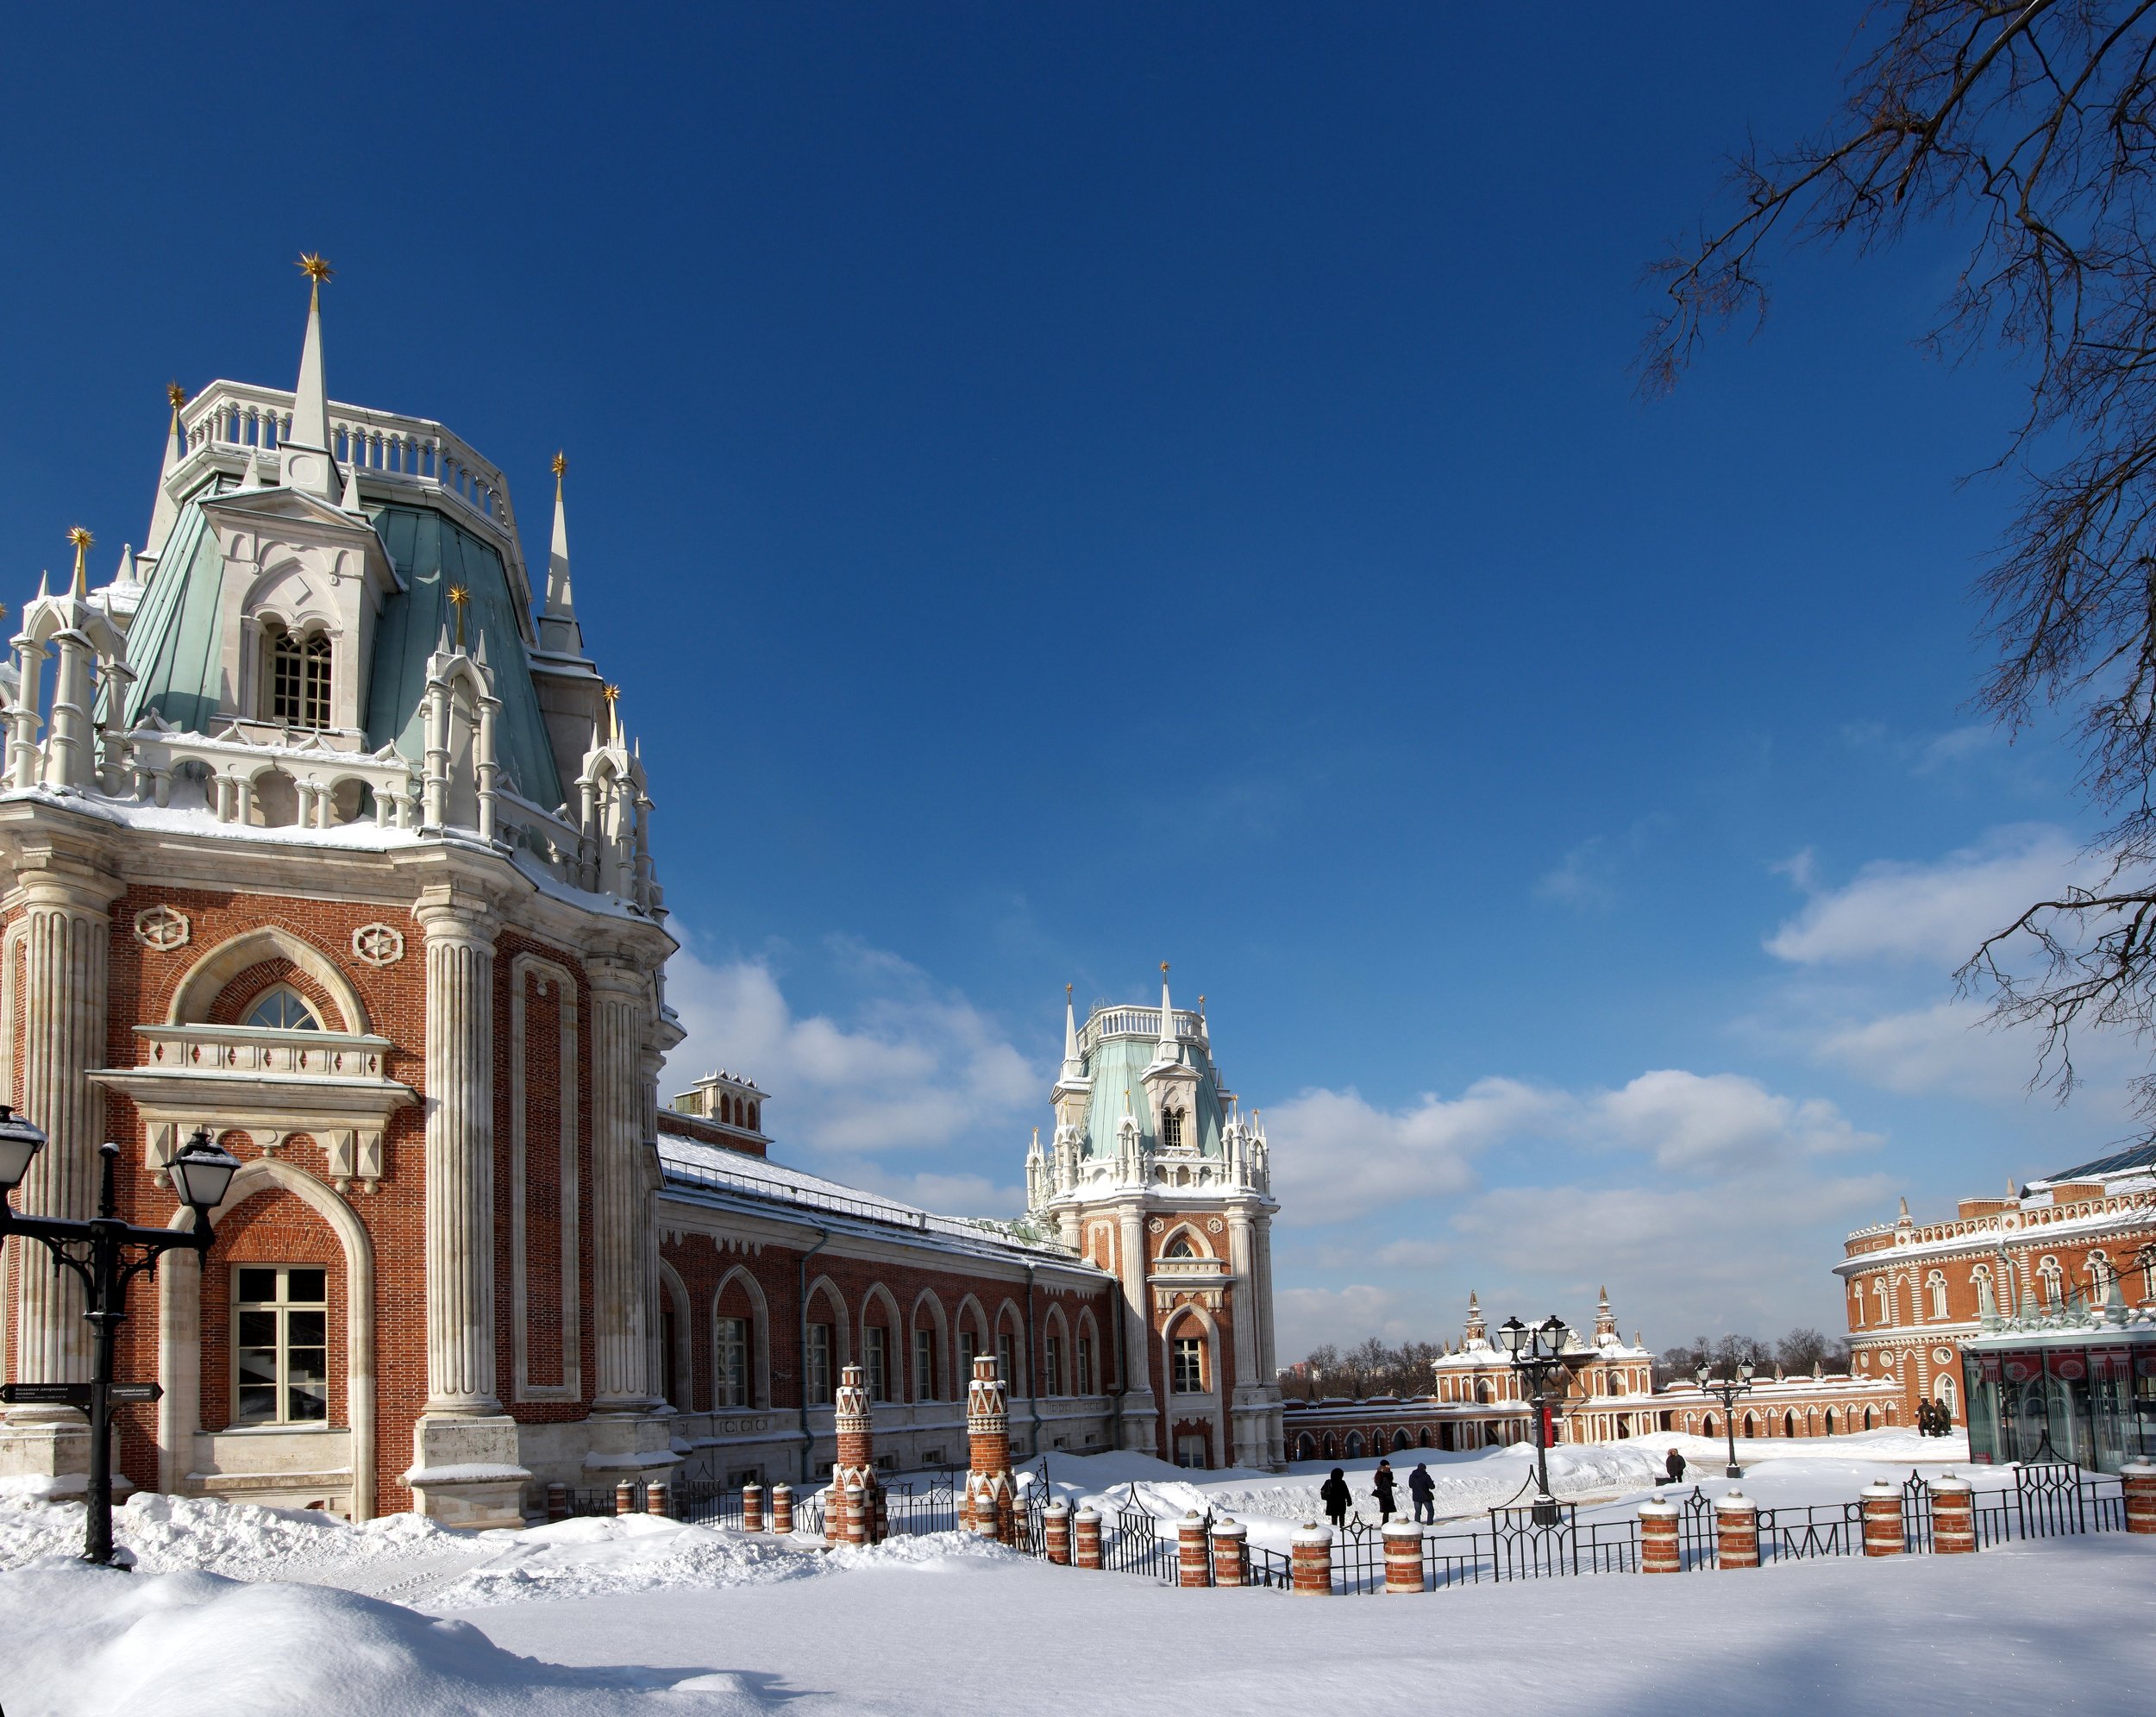 царицыно, снег, дворец, кирпич, синее небо, ограда, музей, Дмитрий Ткаченко